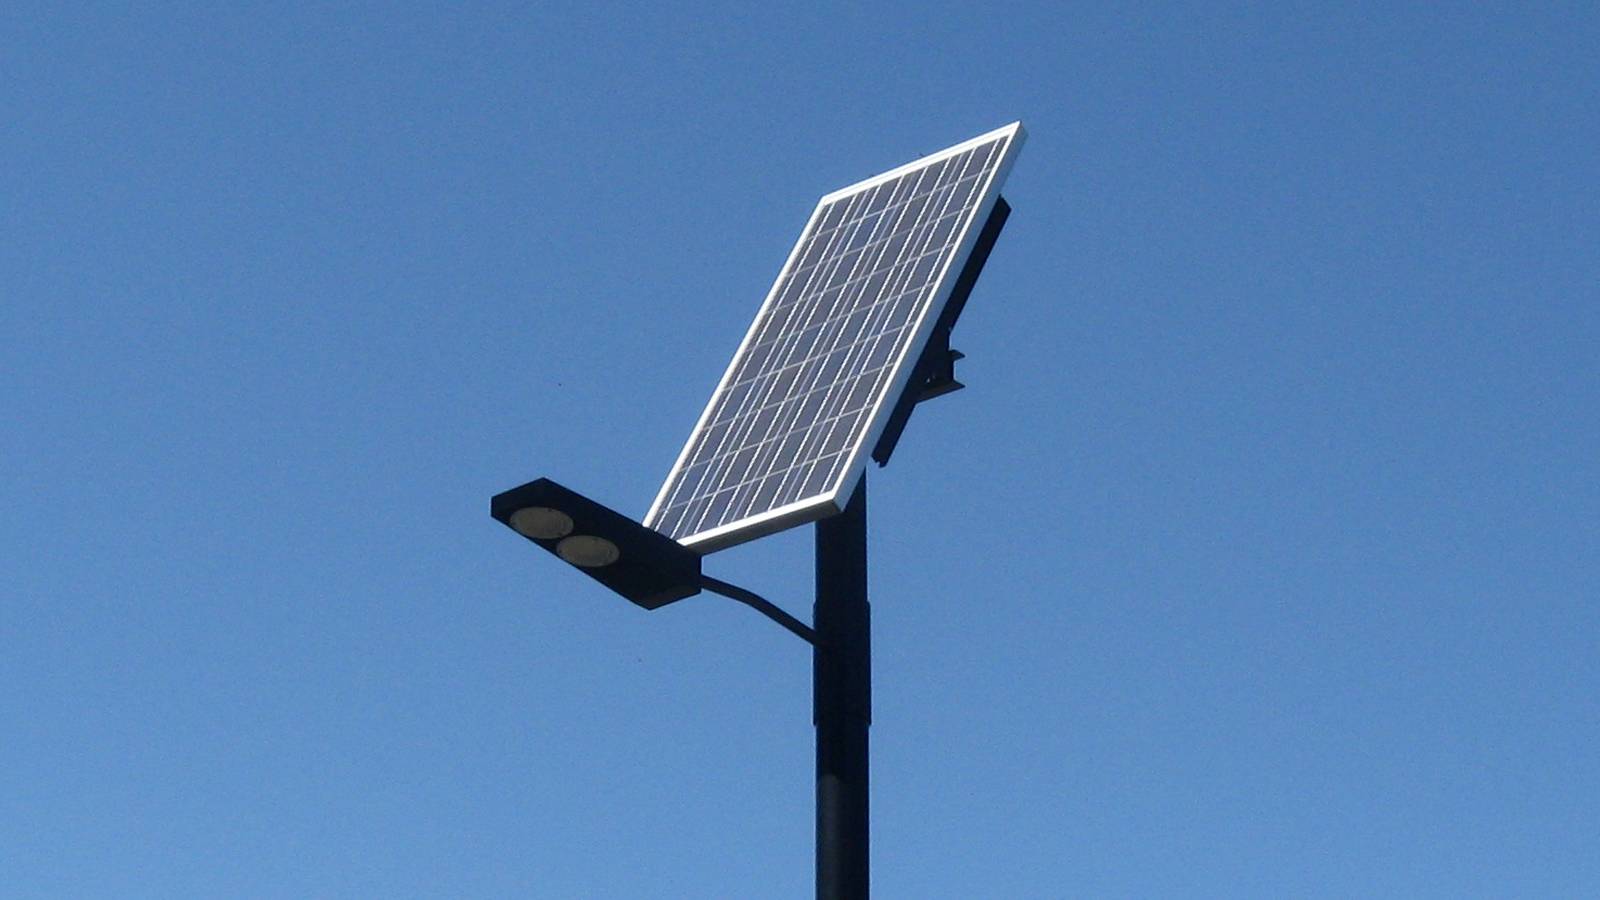 Уличное освещение на солнечных батареях - принцип действия, применение, идеи